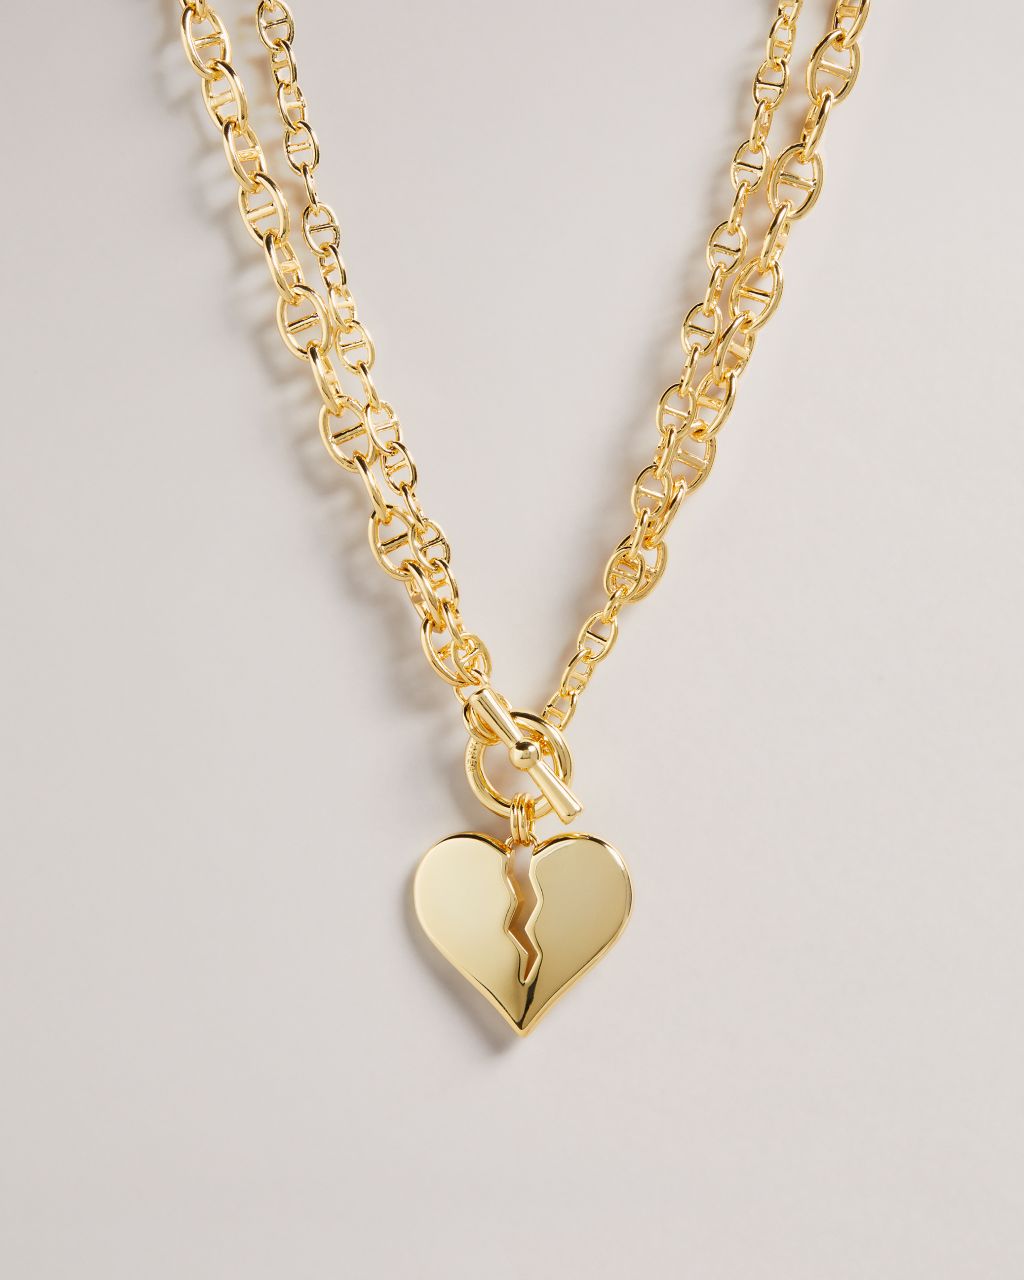 heartbreaker necklace